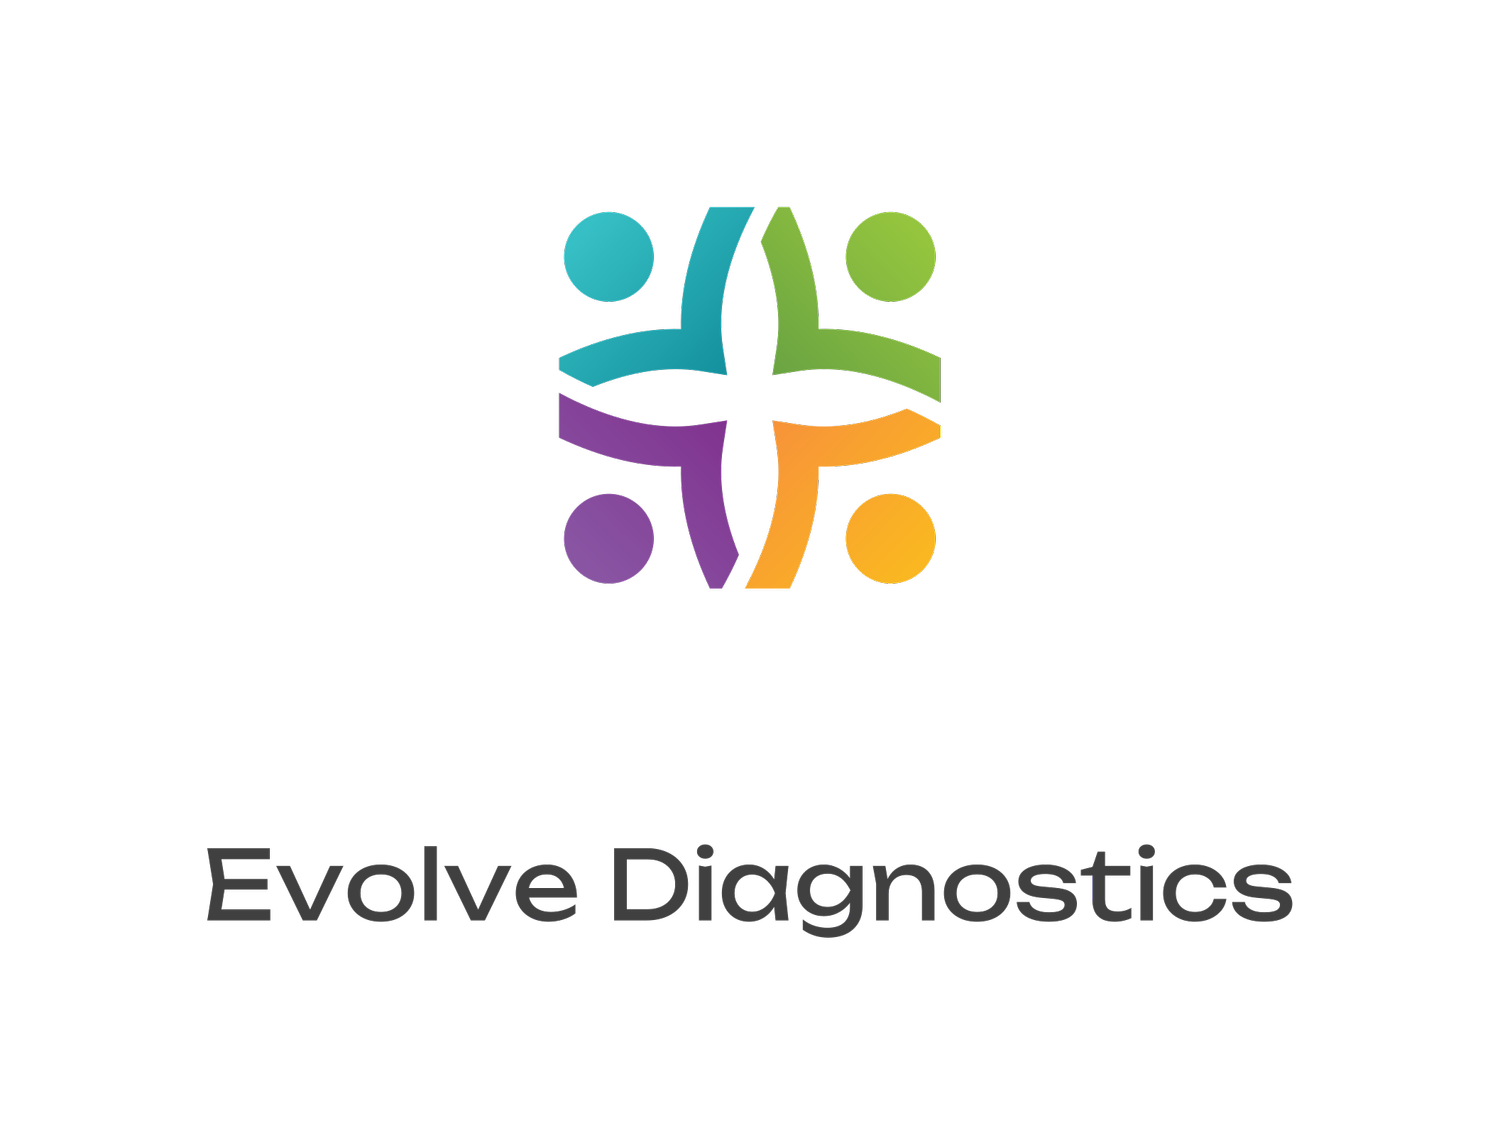 Evolve Diagnostics